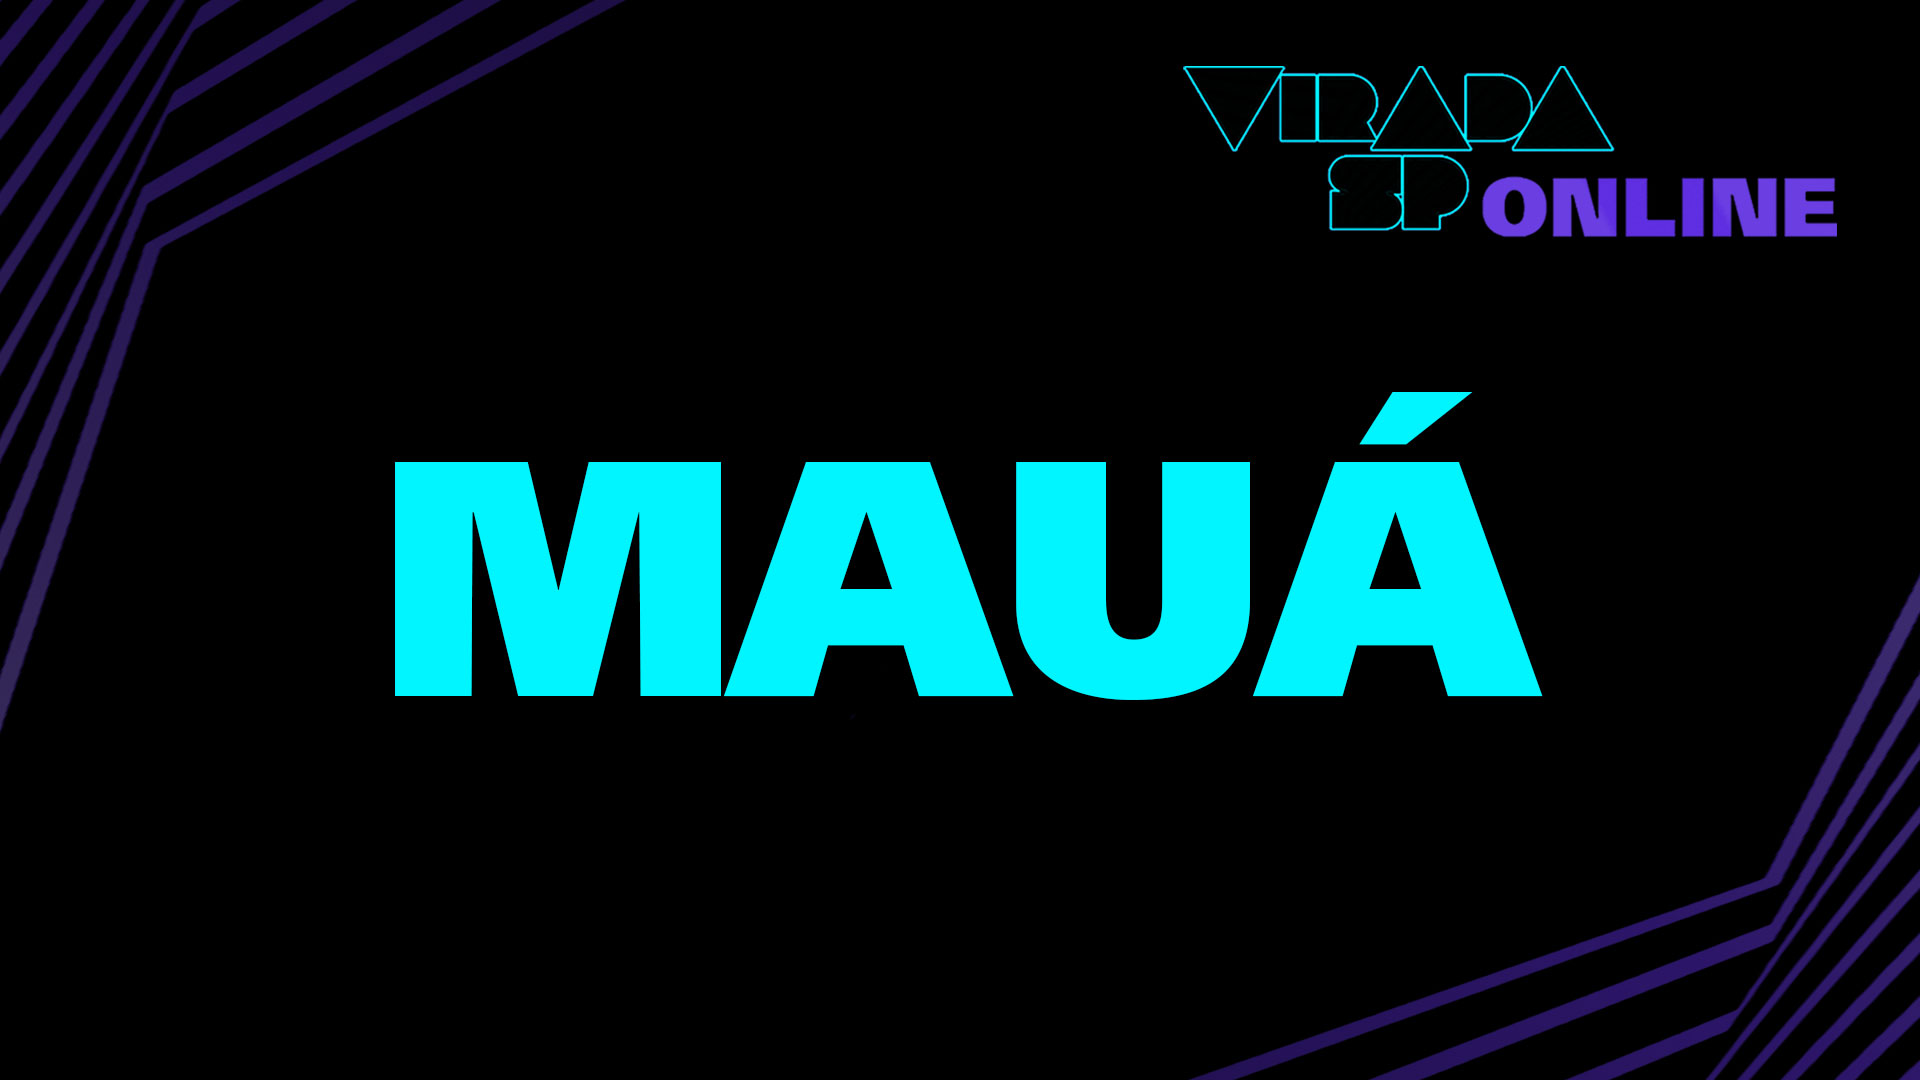 Virada SP Online – Mauá